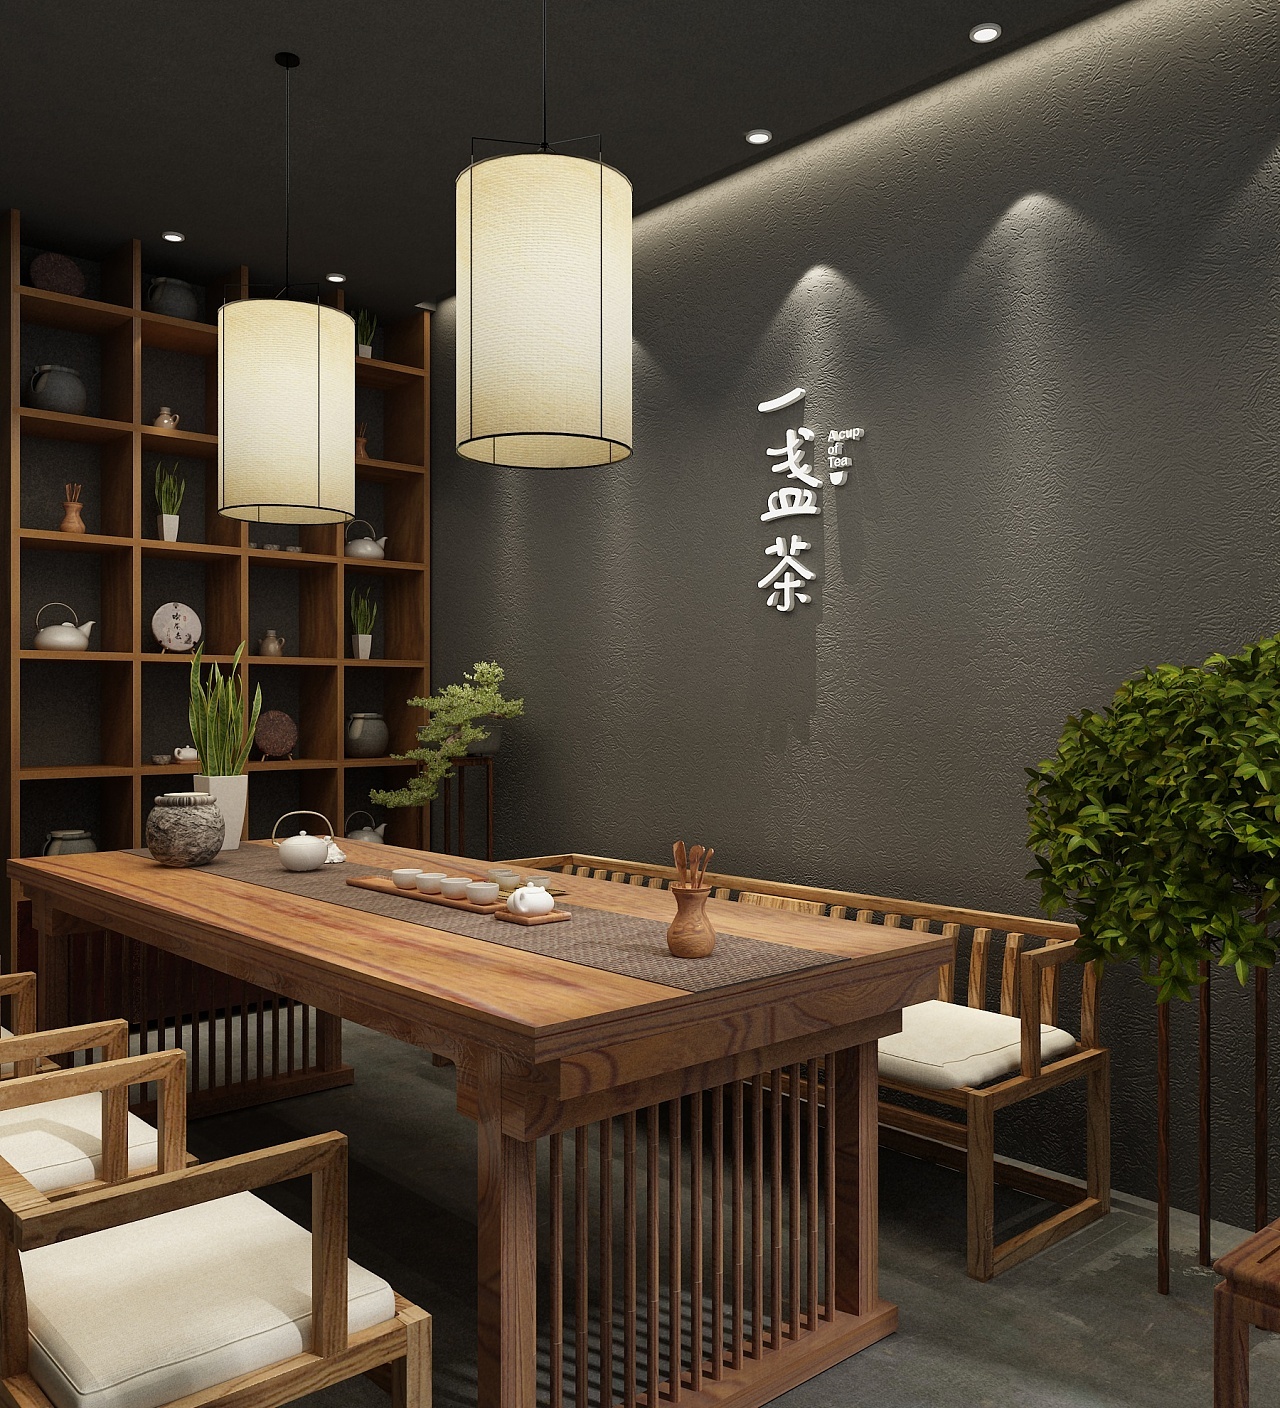 新中式风格茶楼会所CAD施工图+效果图-会所休闲装修-筑龙室内设计论坛